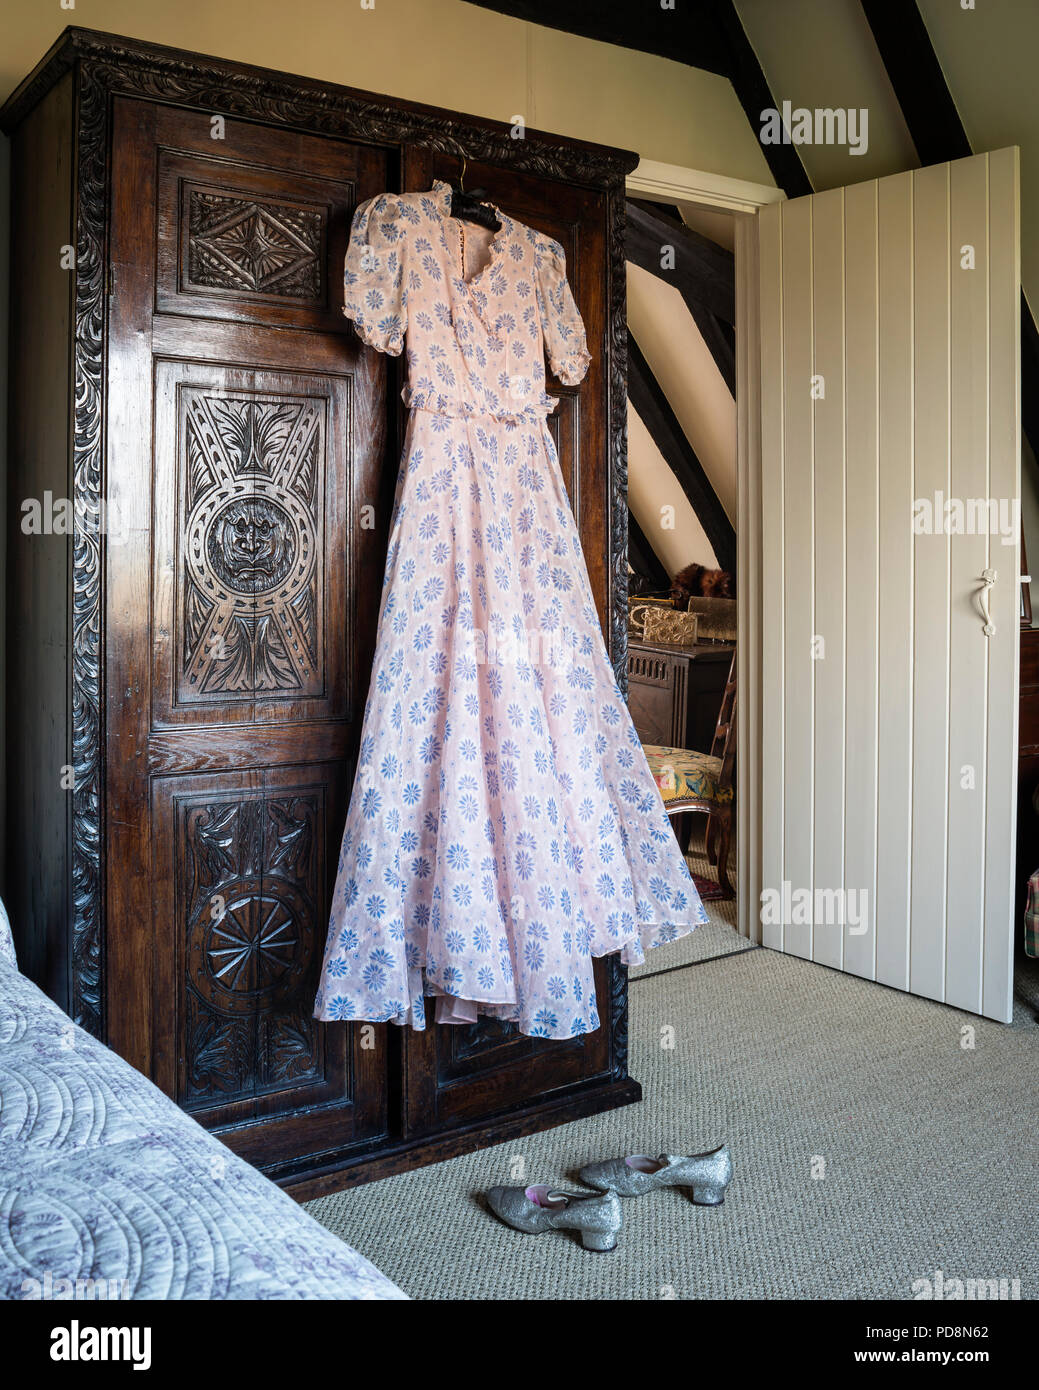 Robe vintage des années 1930 en chêne sculpté ancien accroché sur armoire Banque D'Images